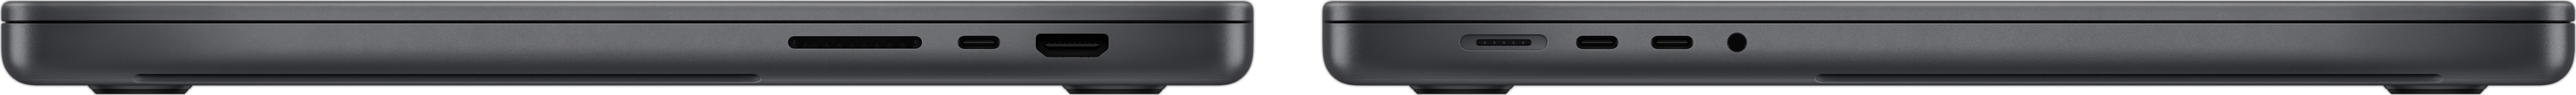 Vista laterale di MacBook Pro che mostra lo slot SDXC card, le tre porte Thunderbolt 4, la porta HDMI, la porta MagSafe 3 per la ricarica e il jack per cuffie.